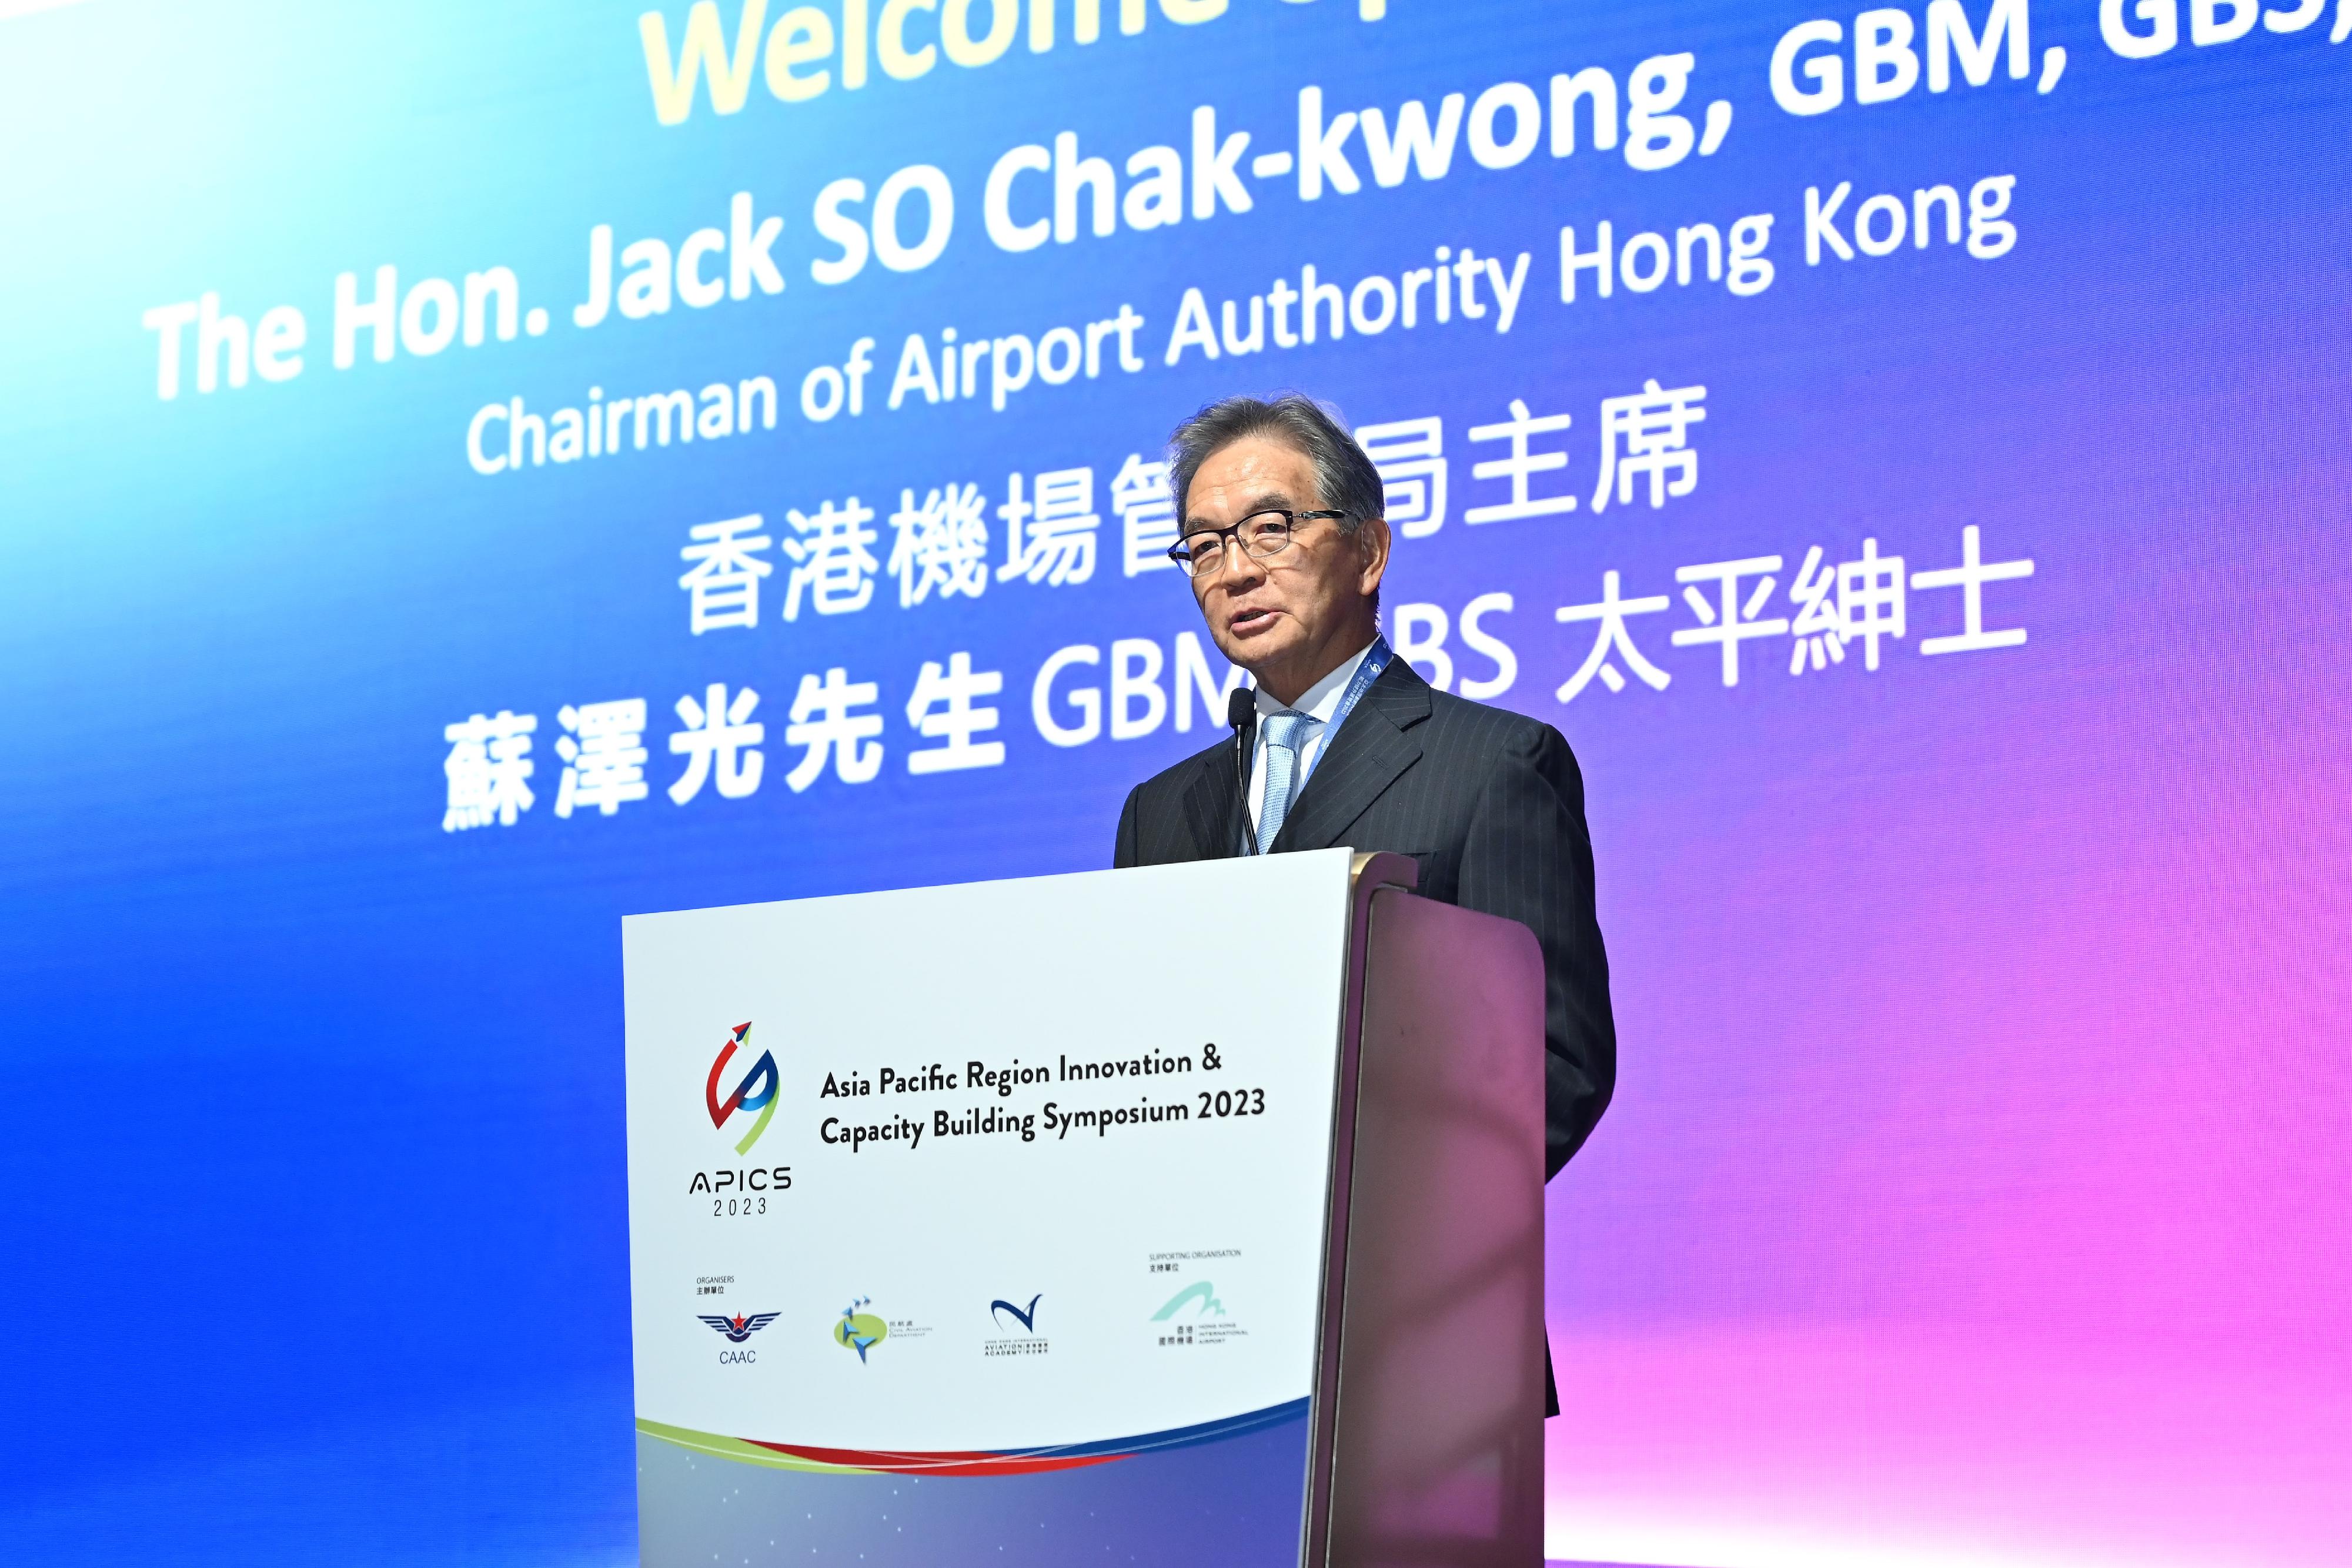 「2023亚太地区创新科技及能力提升展览会」（展览会）今日（十二月十四日）揭幕。香港机场管理局主席苏泽光于展览会开幕礼上致辞。

